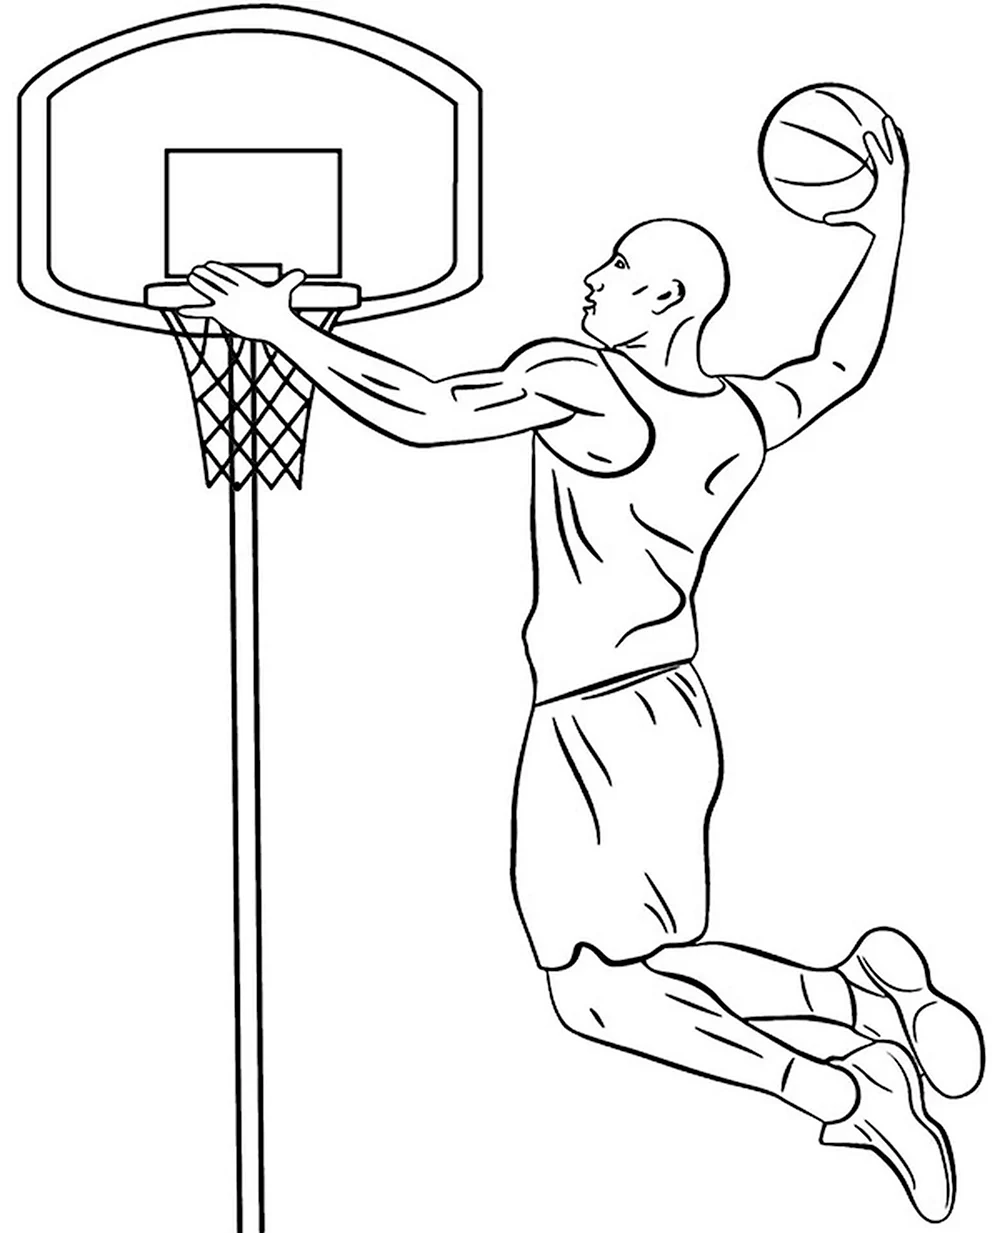 Слэм-данк в баскетболе рисунок